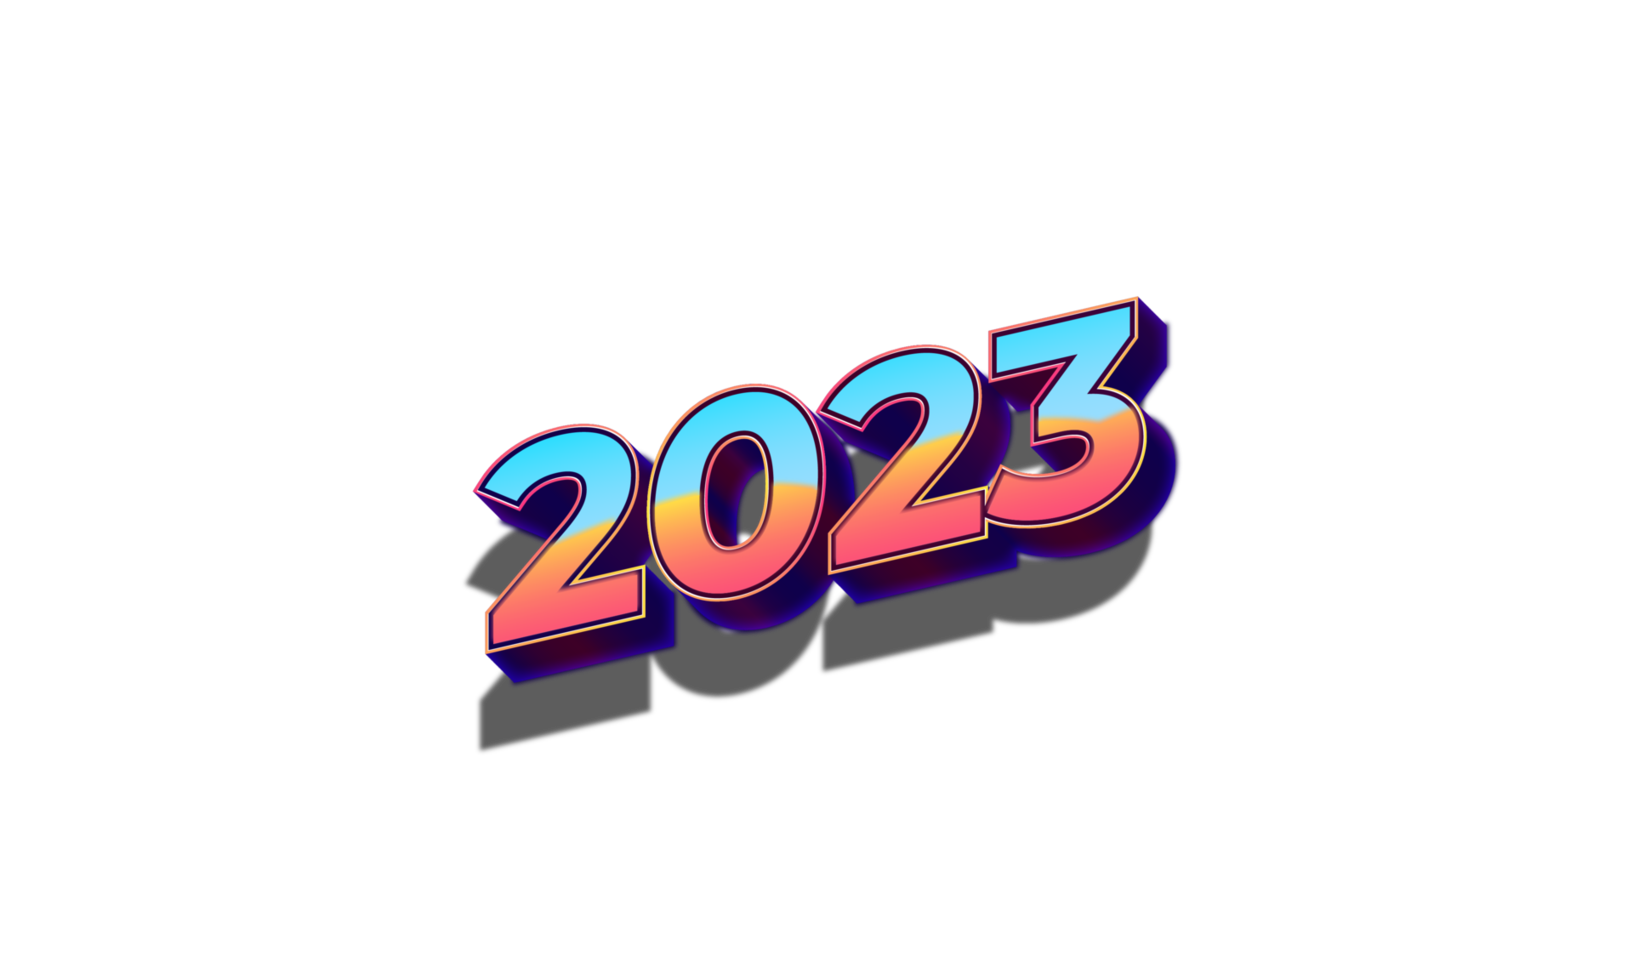 2023 texto en estilo retro png